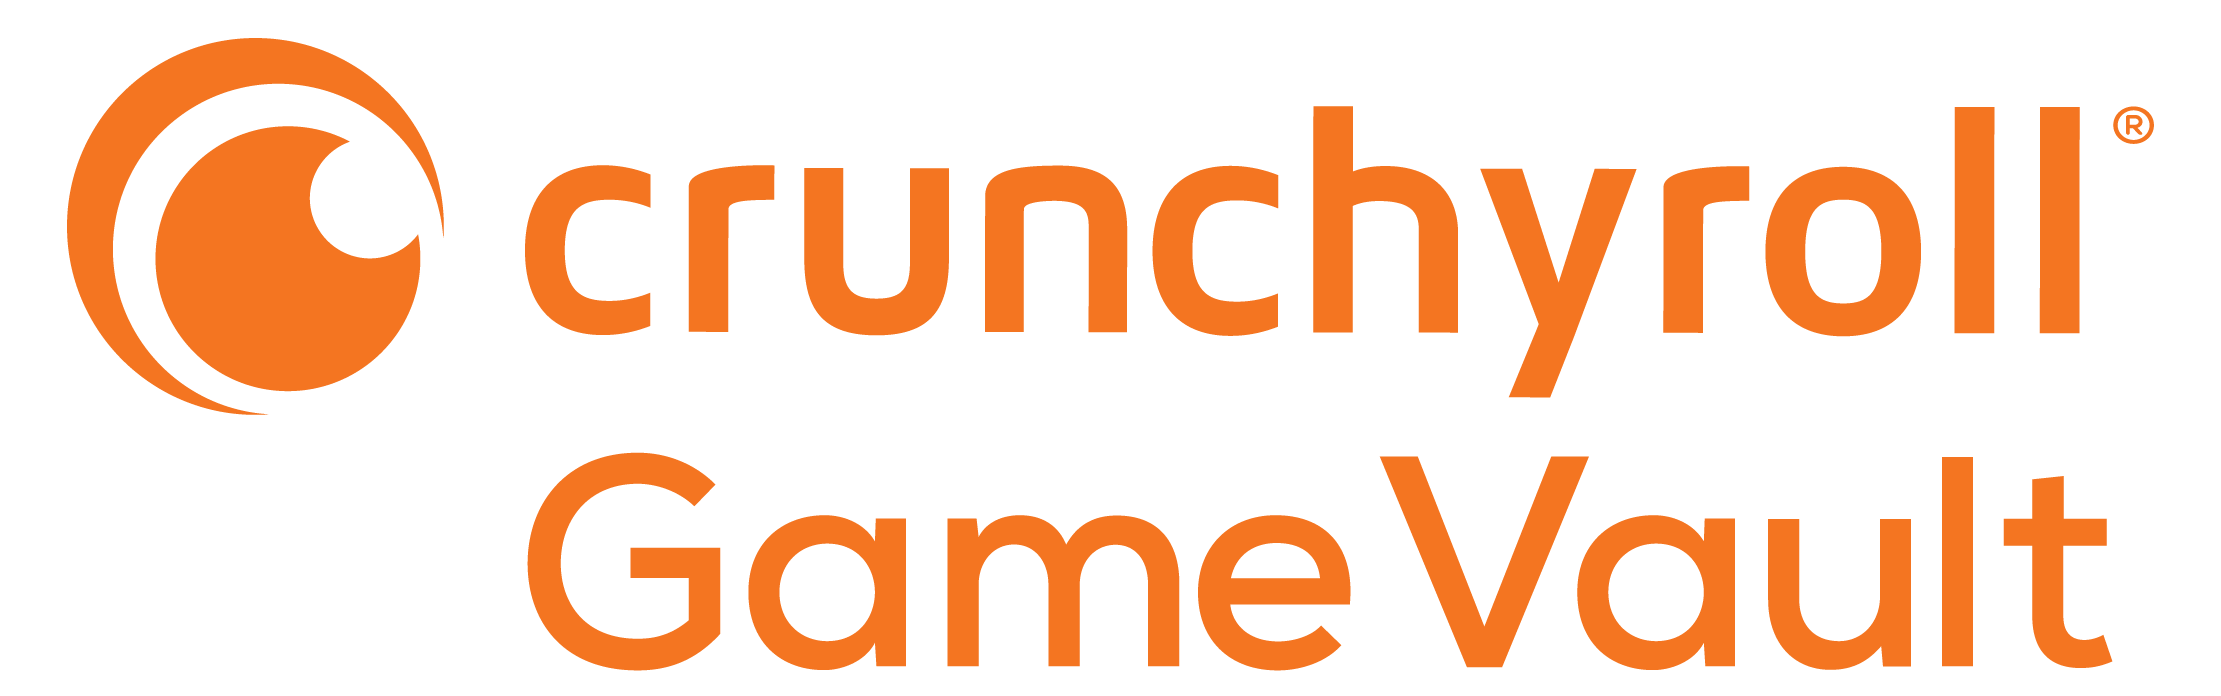 Crunchyroll - Calendário de Transmissão Simultânea